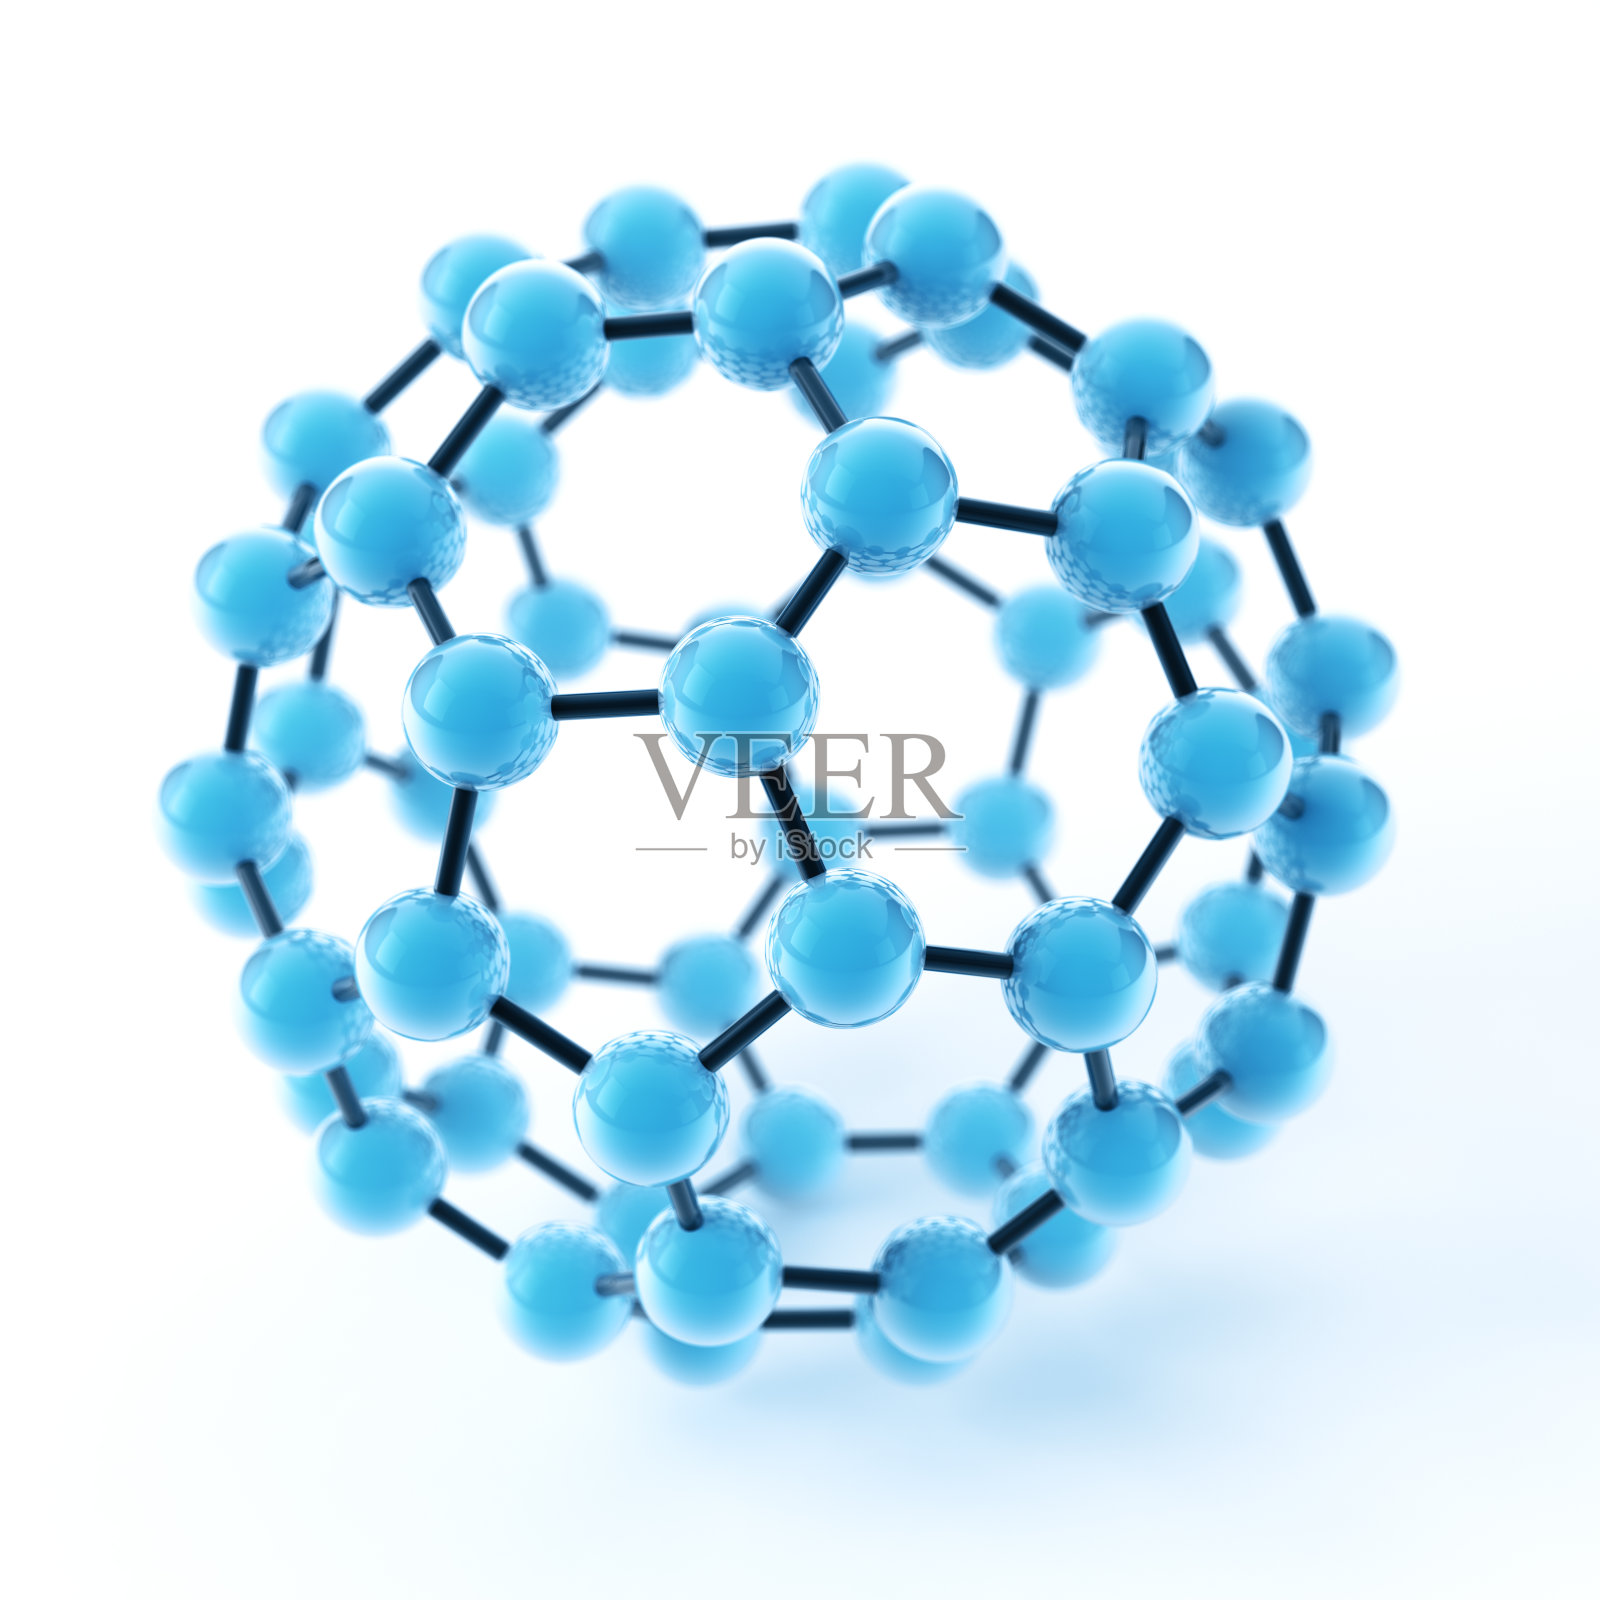 巴基球富勒烯分子插画图片素材